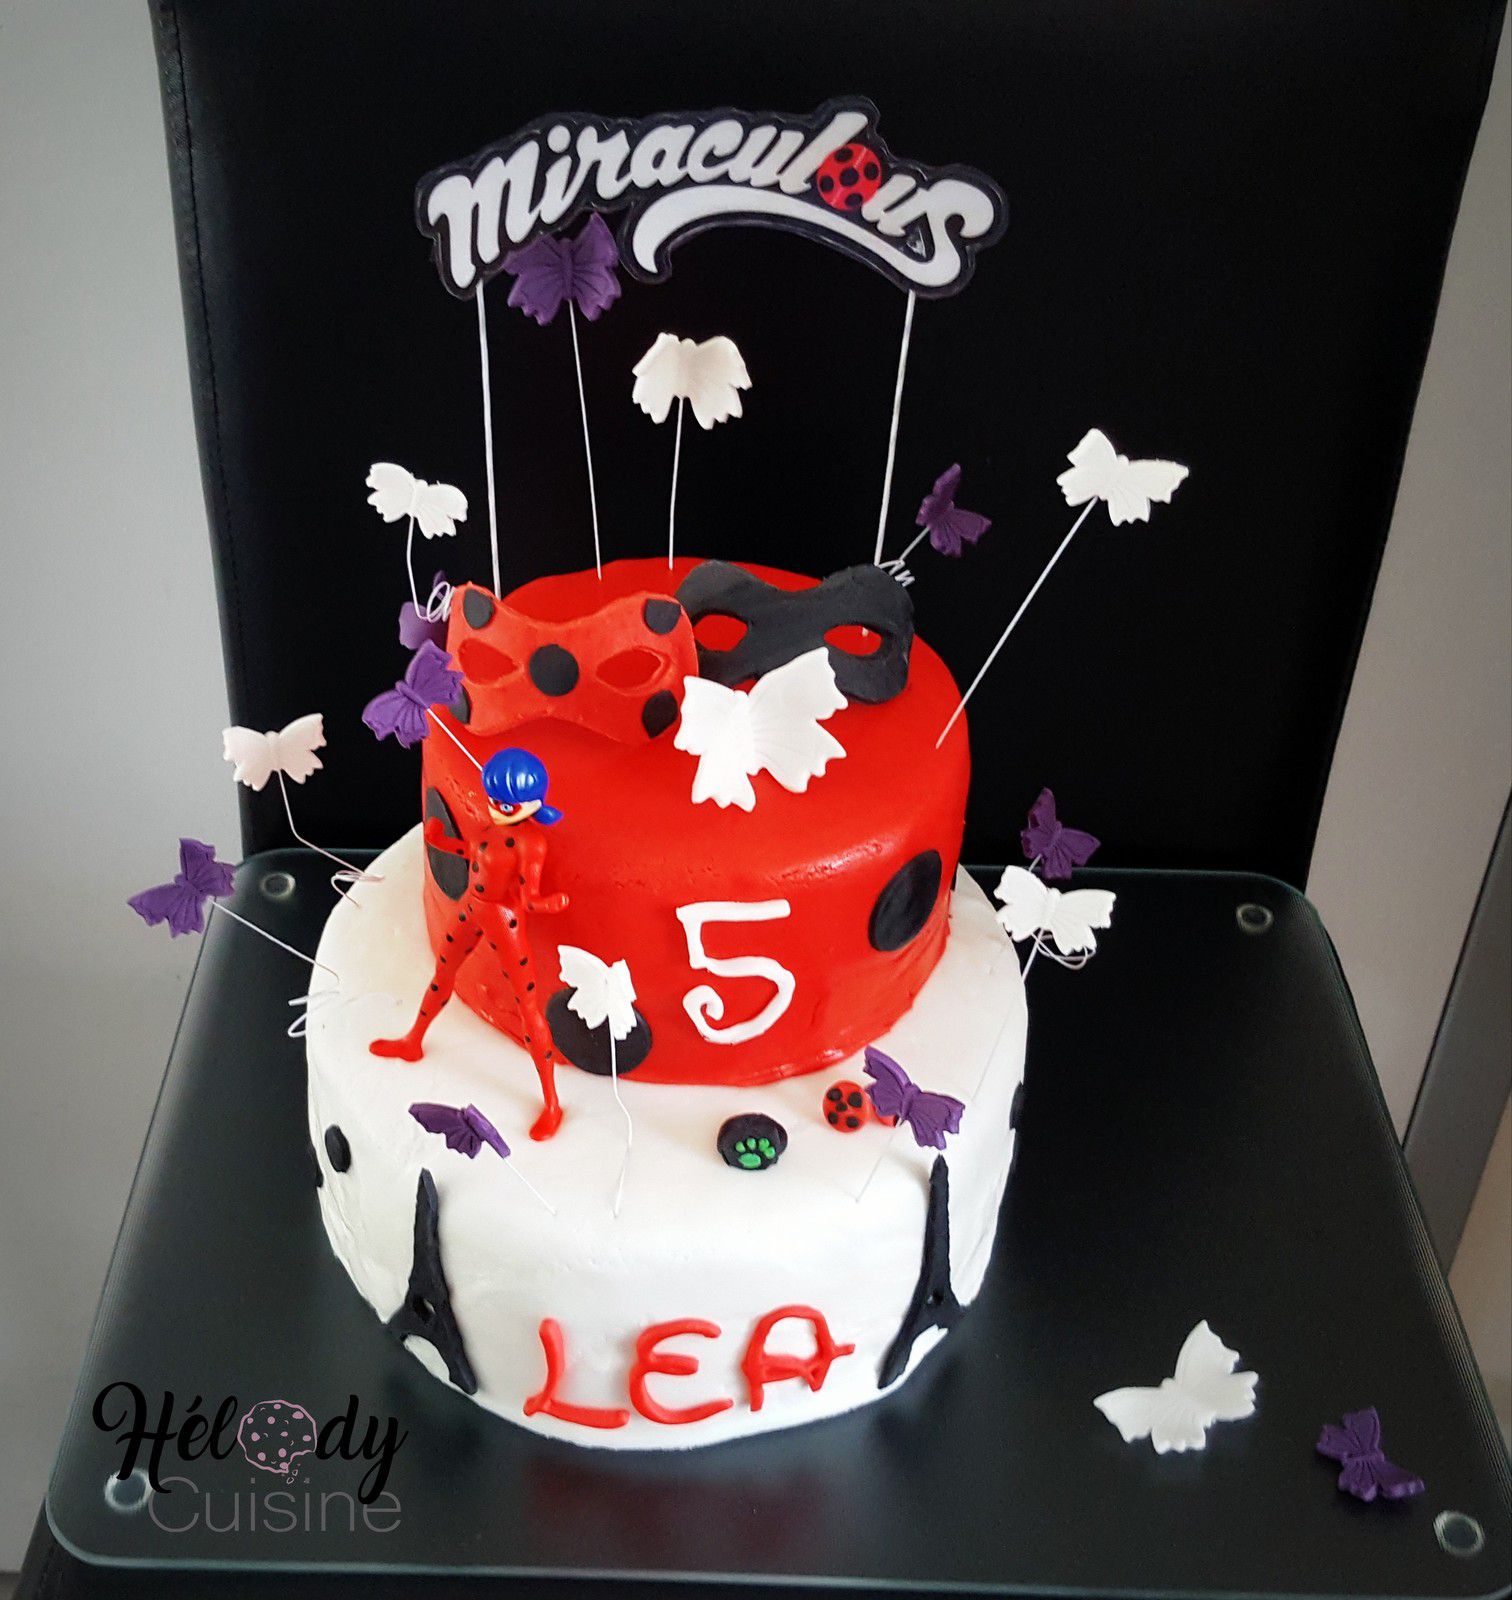 Gâteau d'anniversaire Miraculous Lady Bug - Elodie cuisine pour